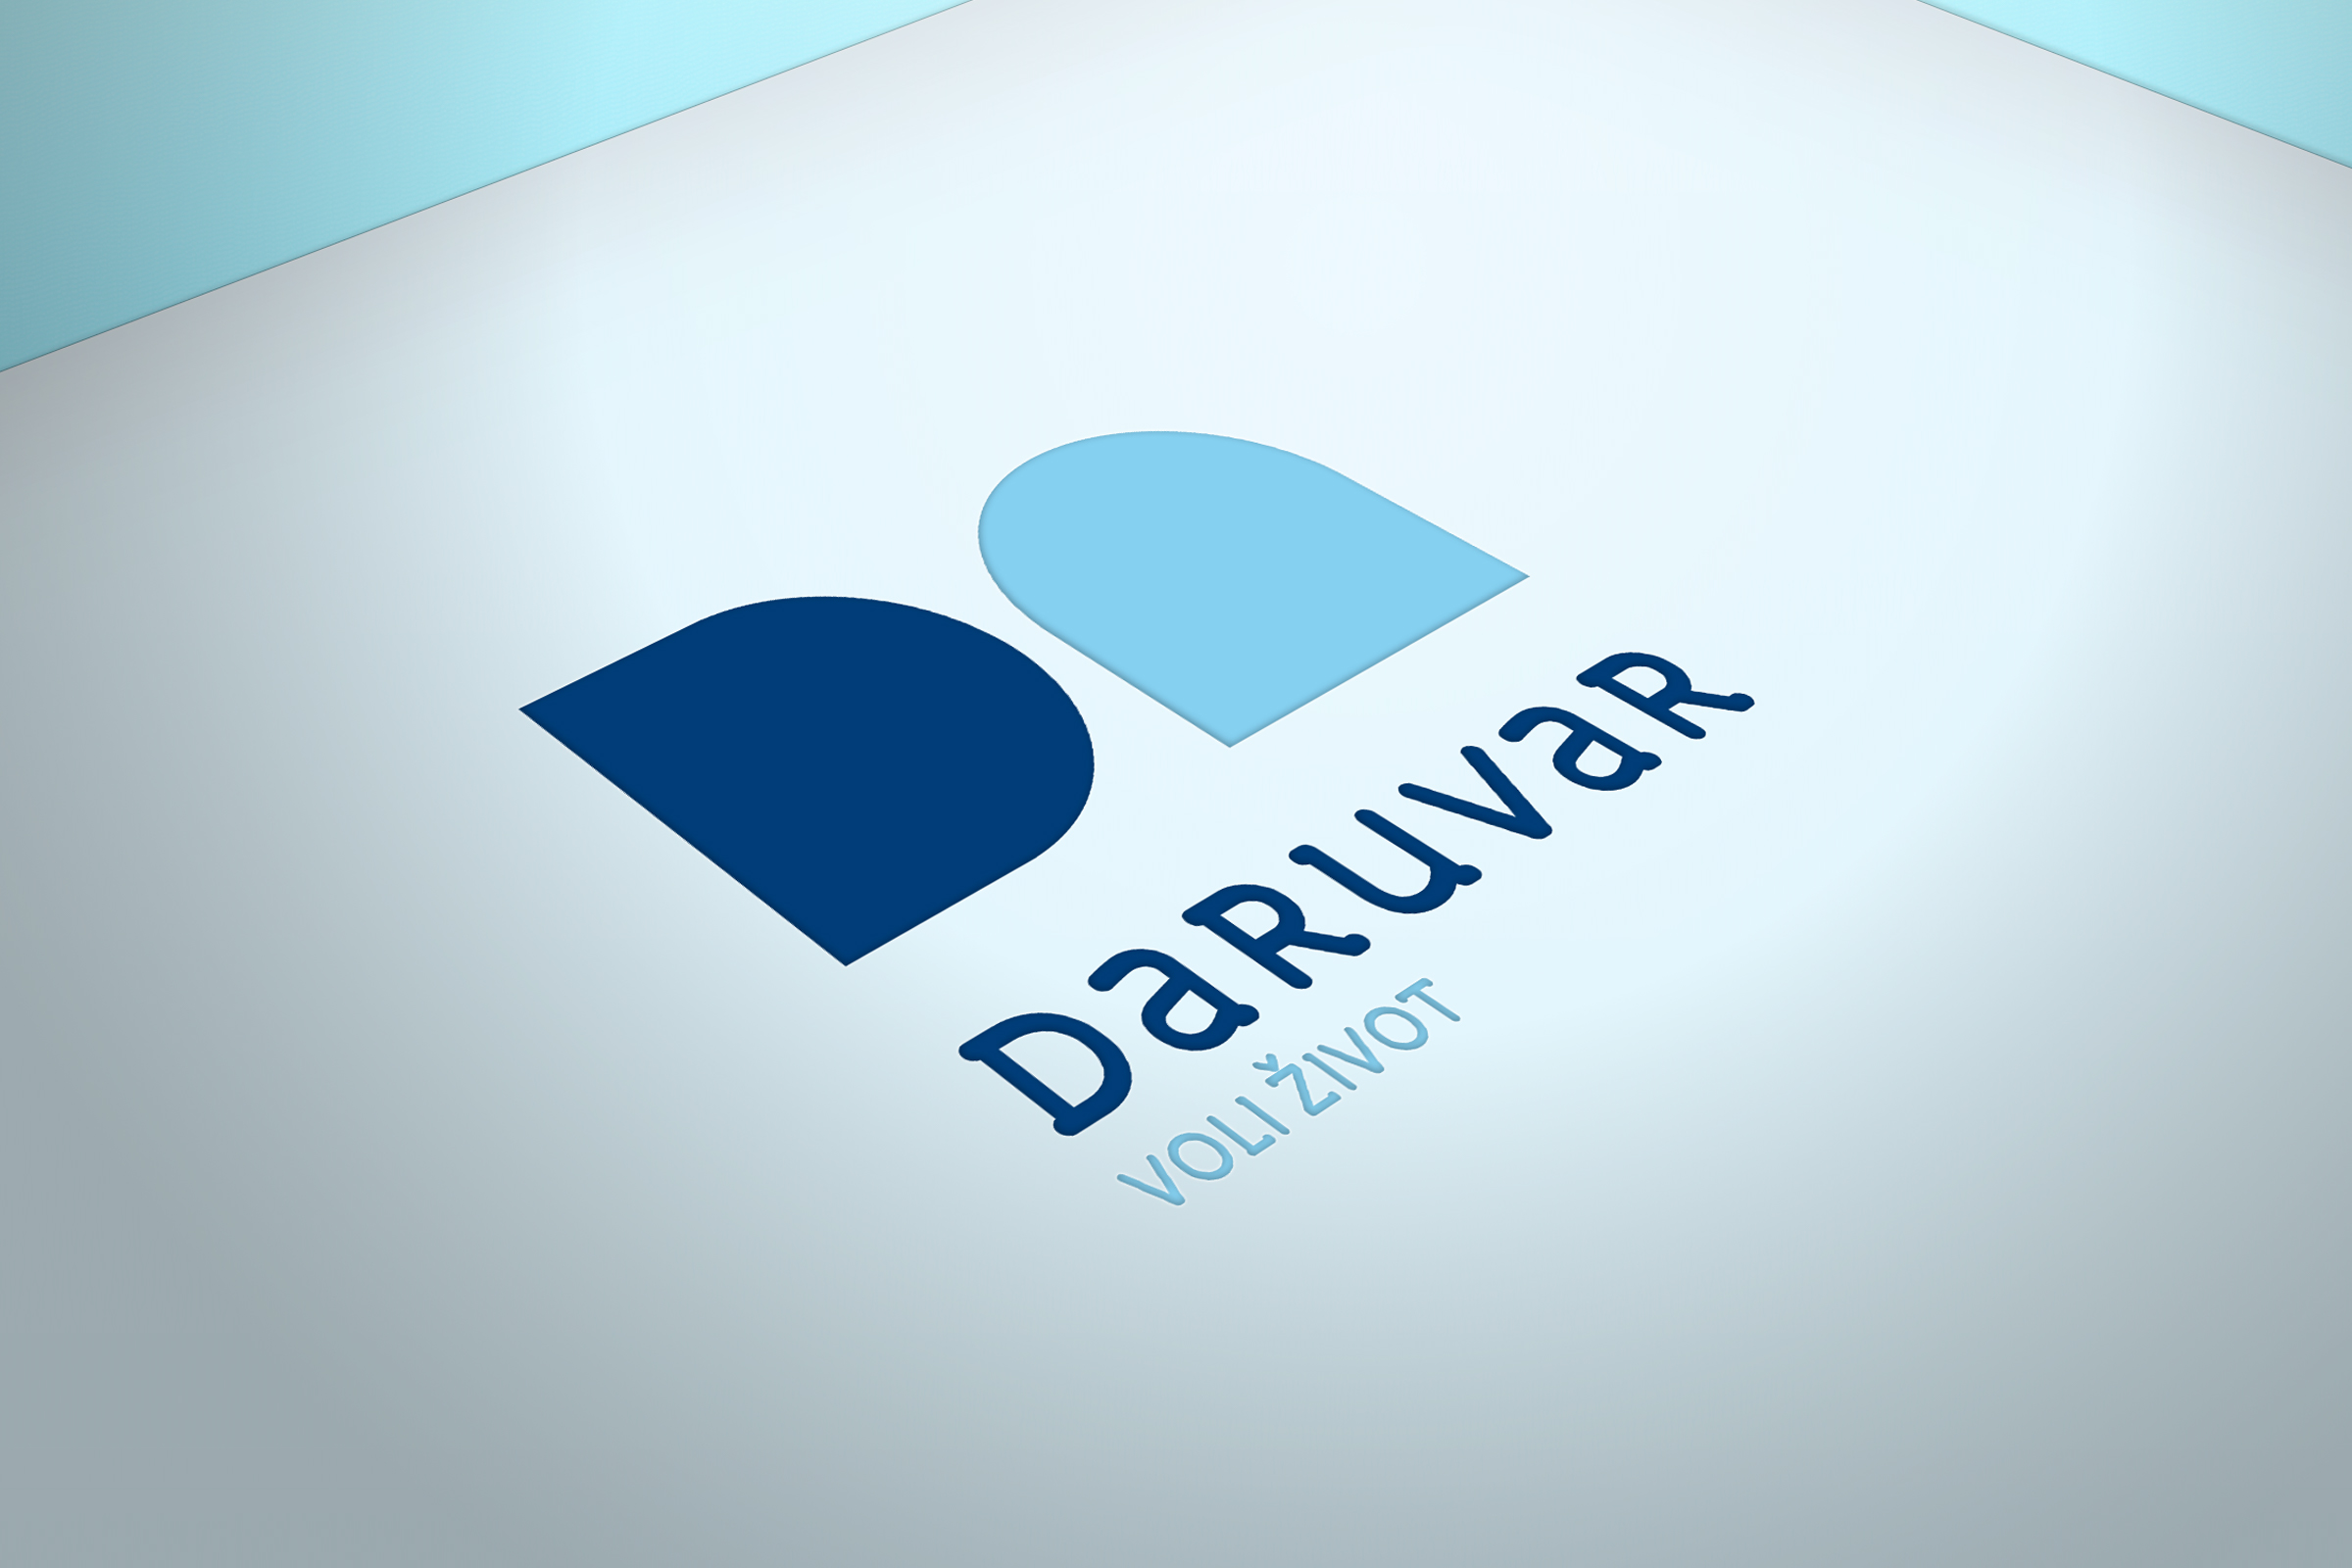 Izrada logotipa i slogana za grad Daruvar